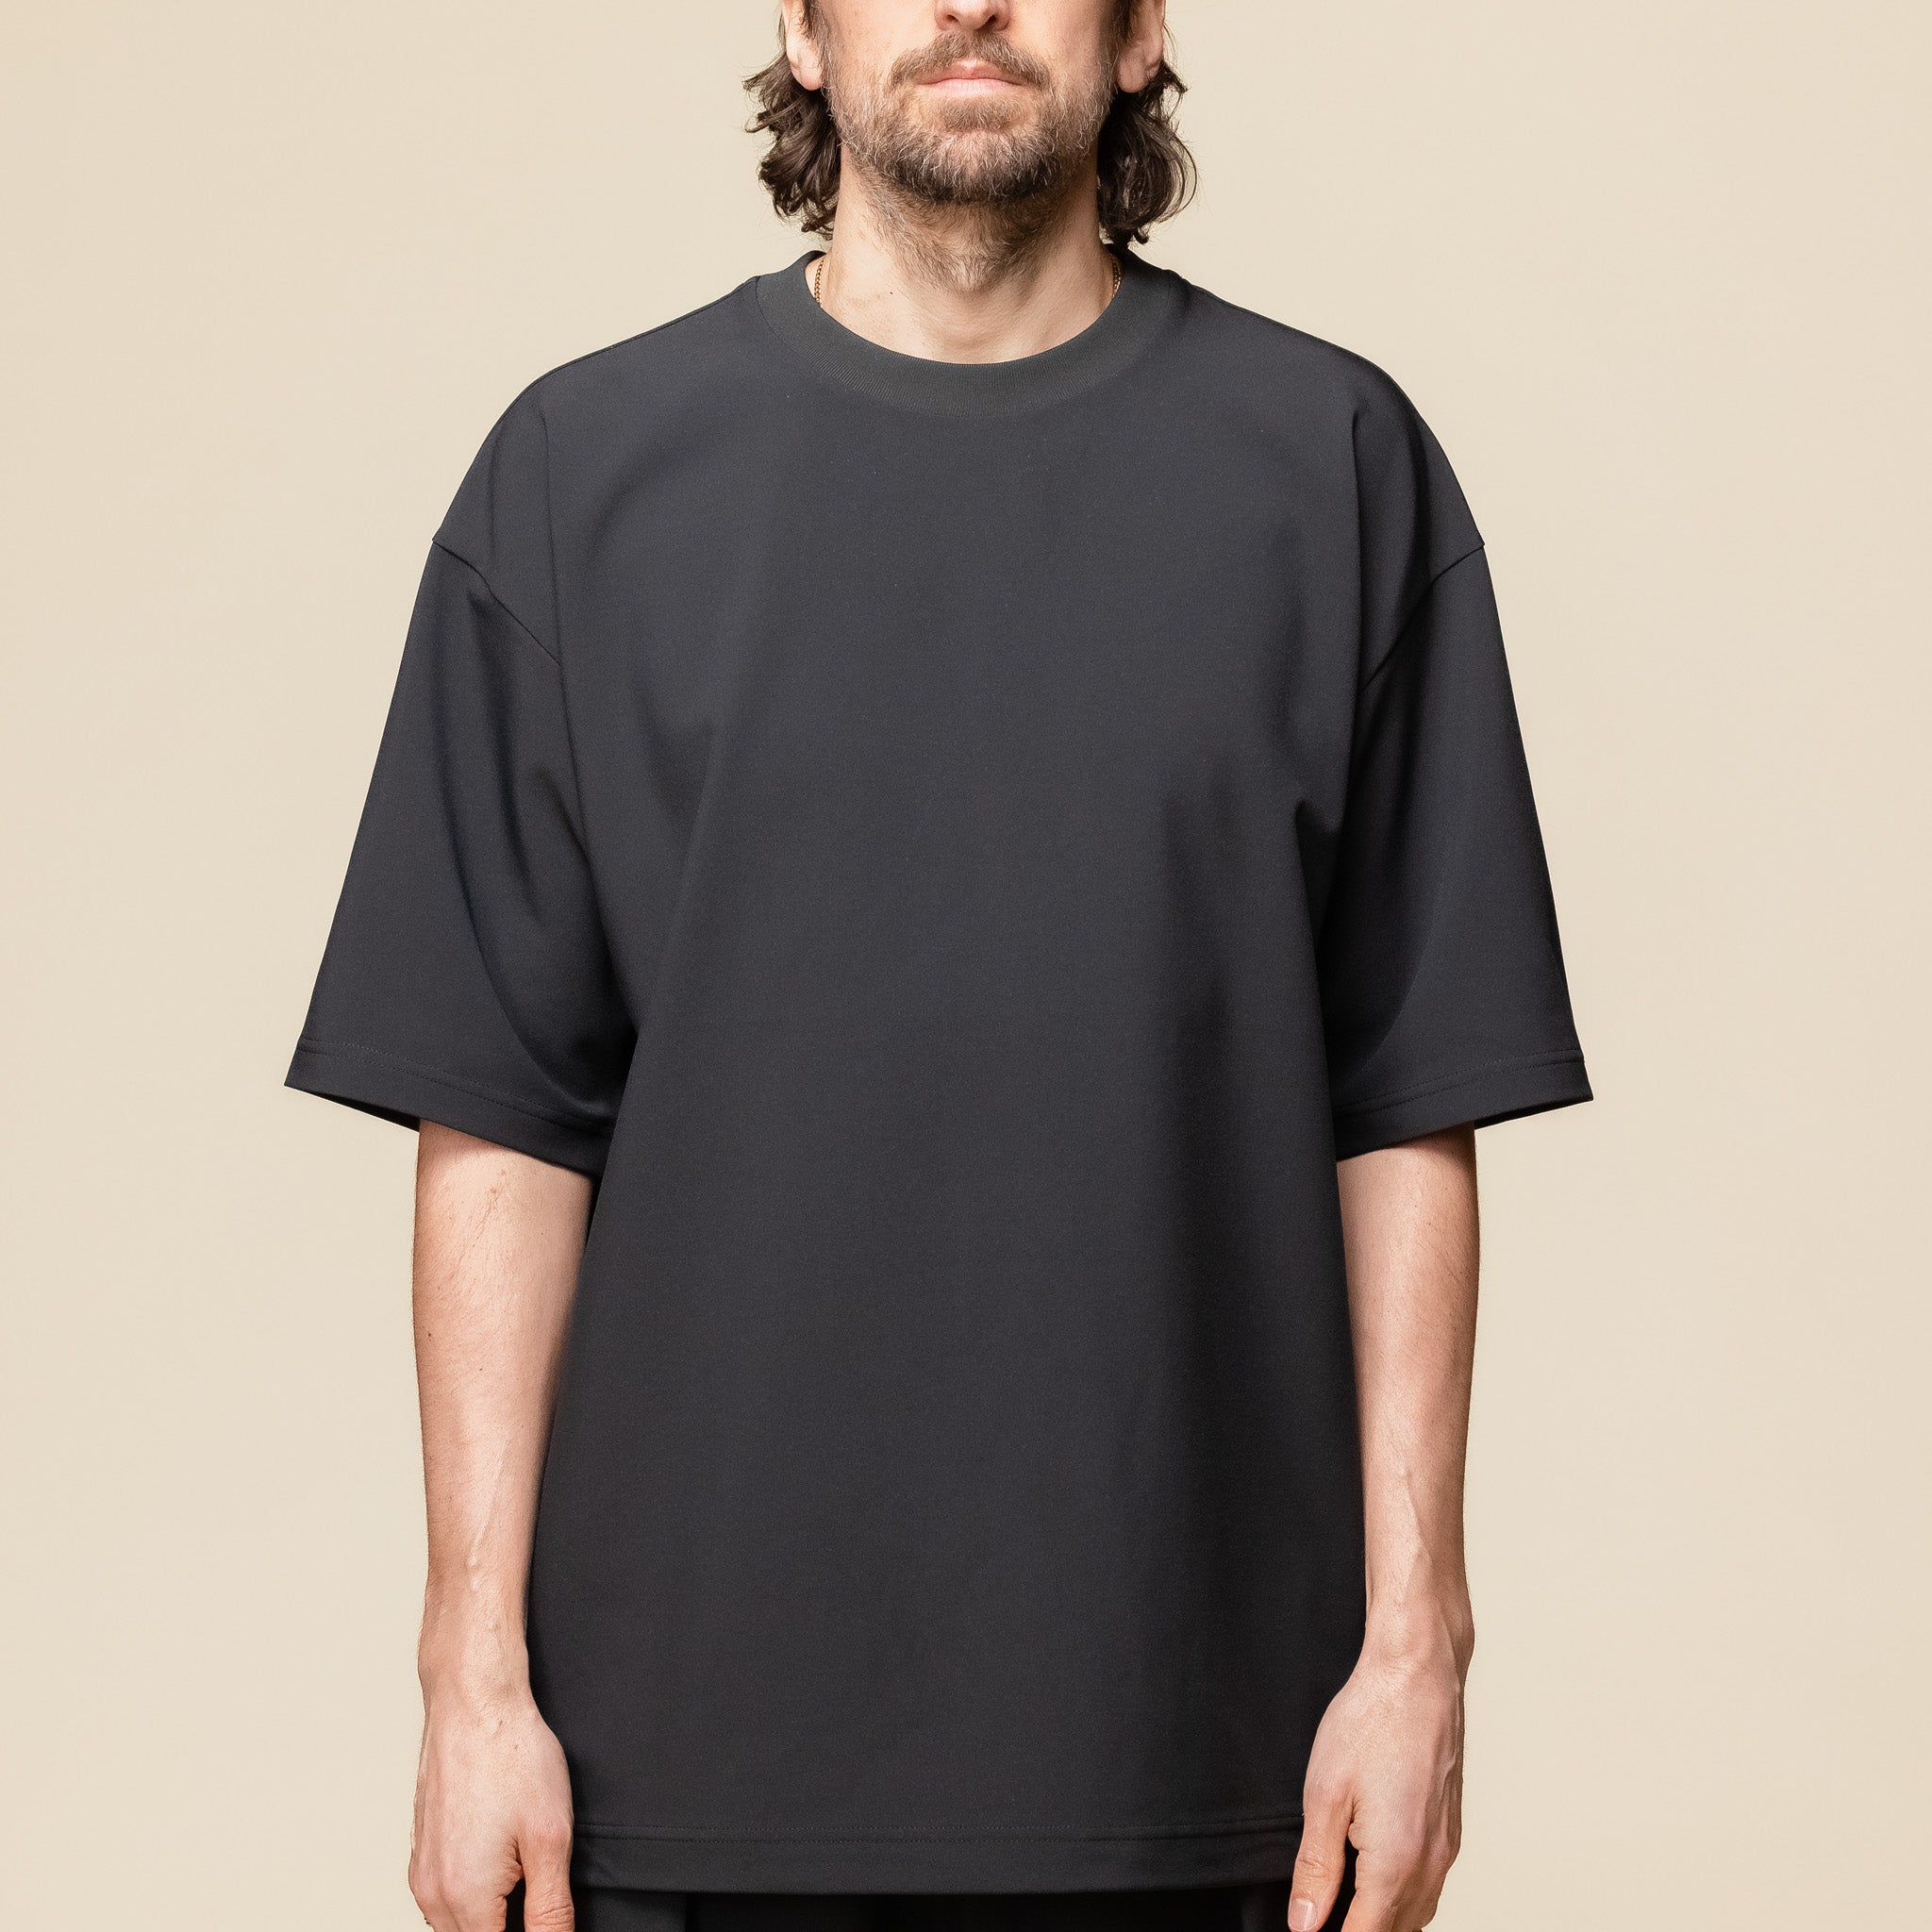 DLMXGA52U Descente IO - Tech Half Sleeve T-Shirt - Black "descente I/O" "descente allterrain" "descente t-shirt"